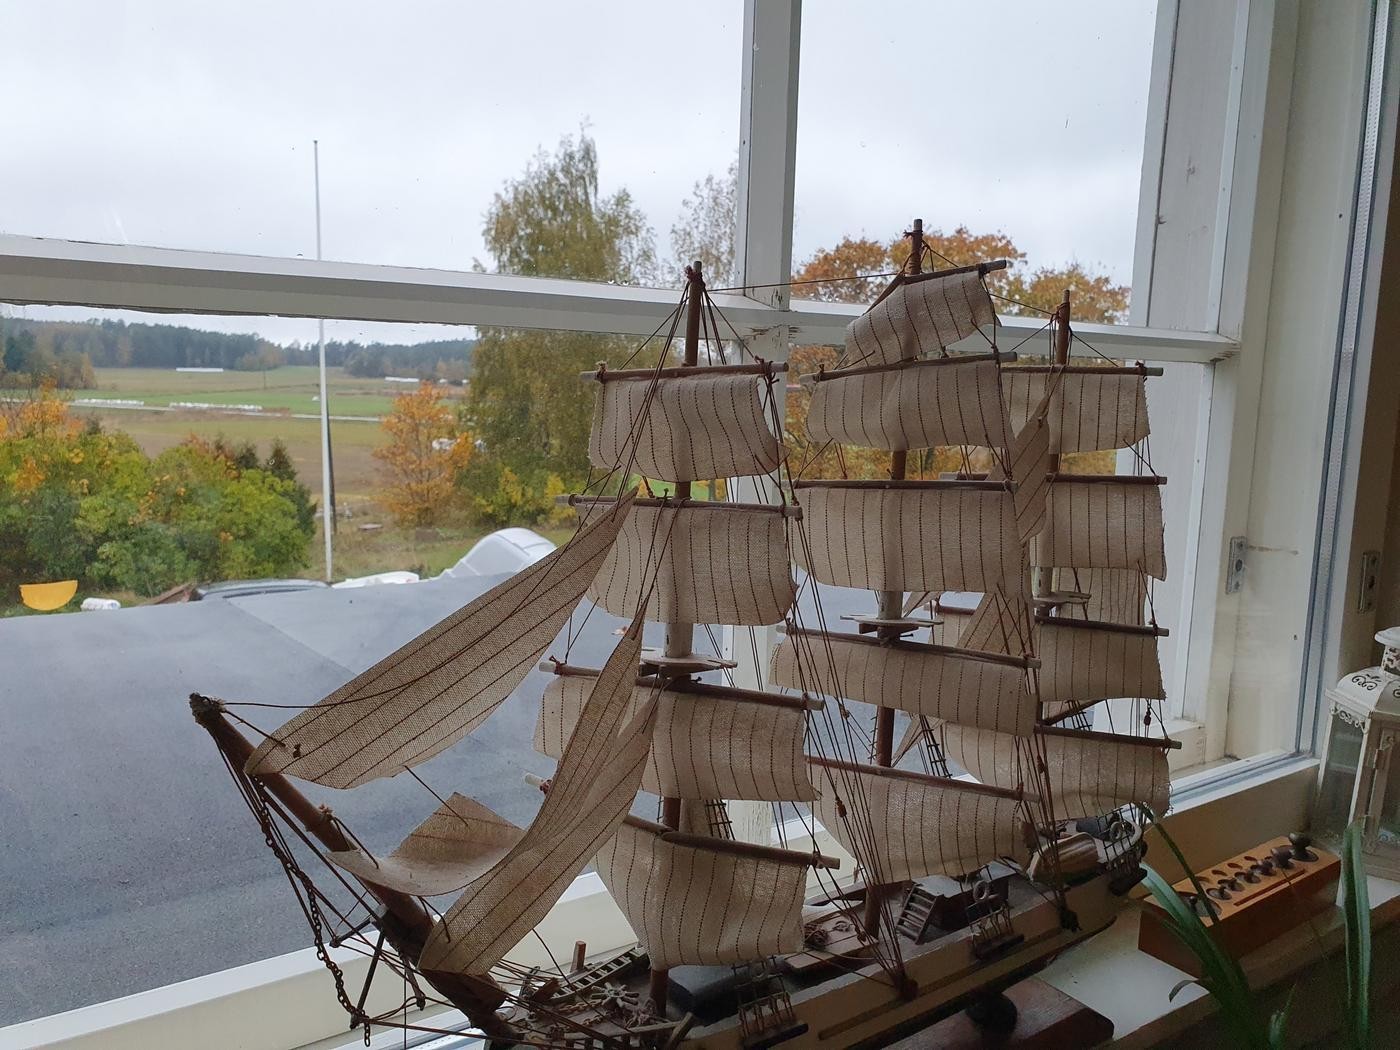 miniatyr segelbåt i fönster